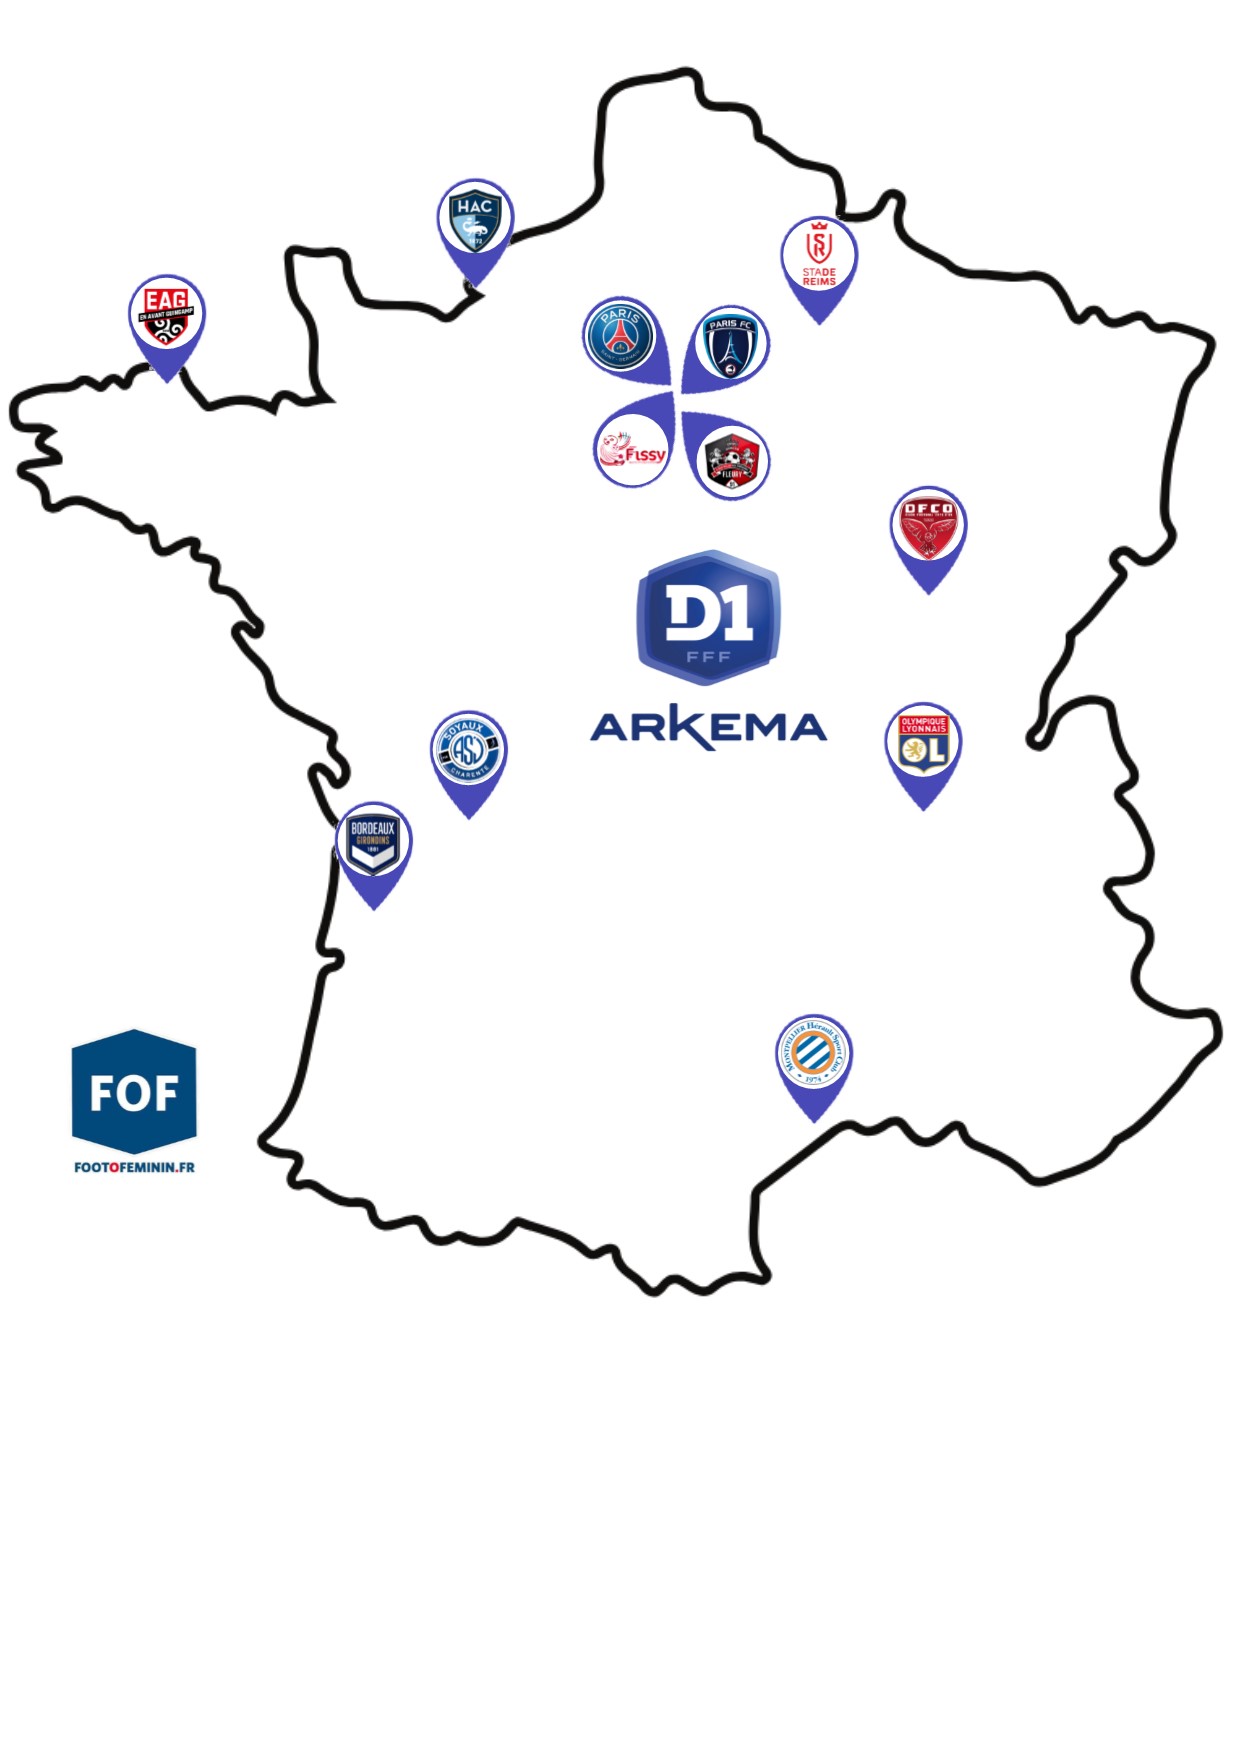 #D1Arkema - Les relégations maintenues, seulement dix équipes en 2021-2022 ?